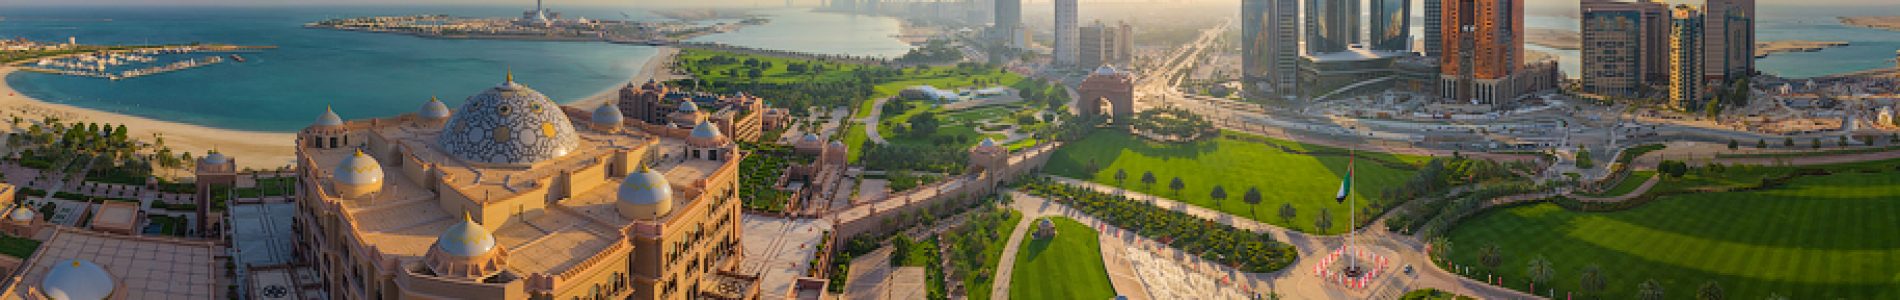 Aerial image of Emirates Palace Hotel. Abu Dhabi, UAE